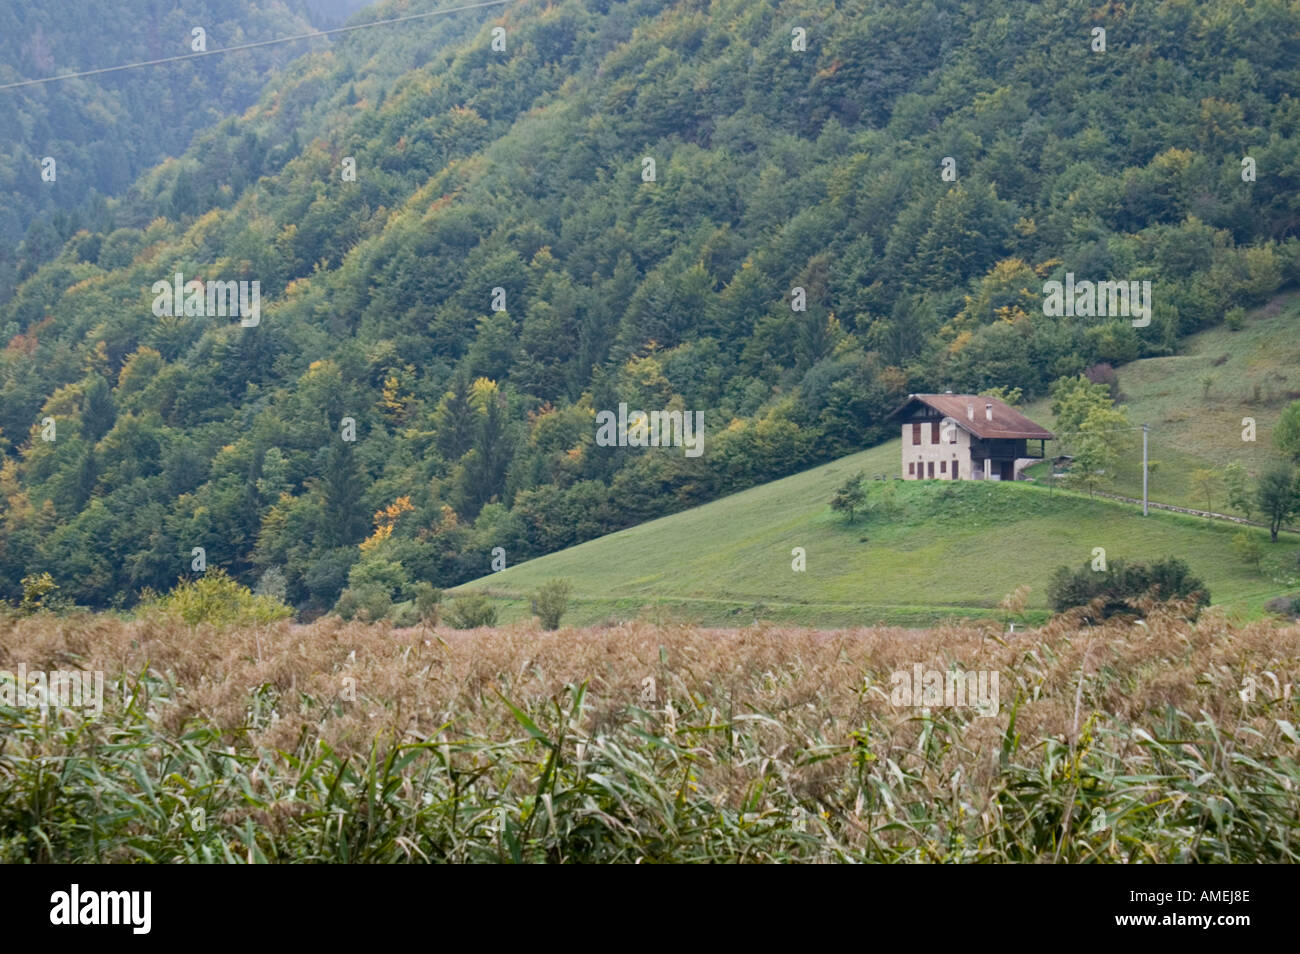 Ampola in Trentino alpi vicino al Lago di Garda Italia naturali riserva ecologica con zona umida e stagionale e sentieri di lago e centro visitatori Foto Stock